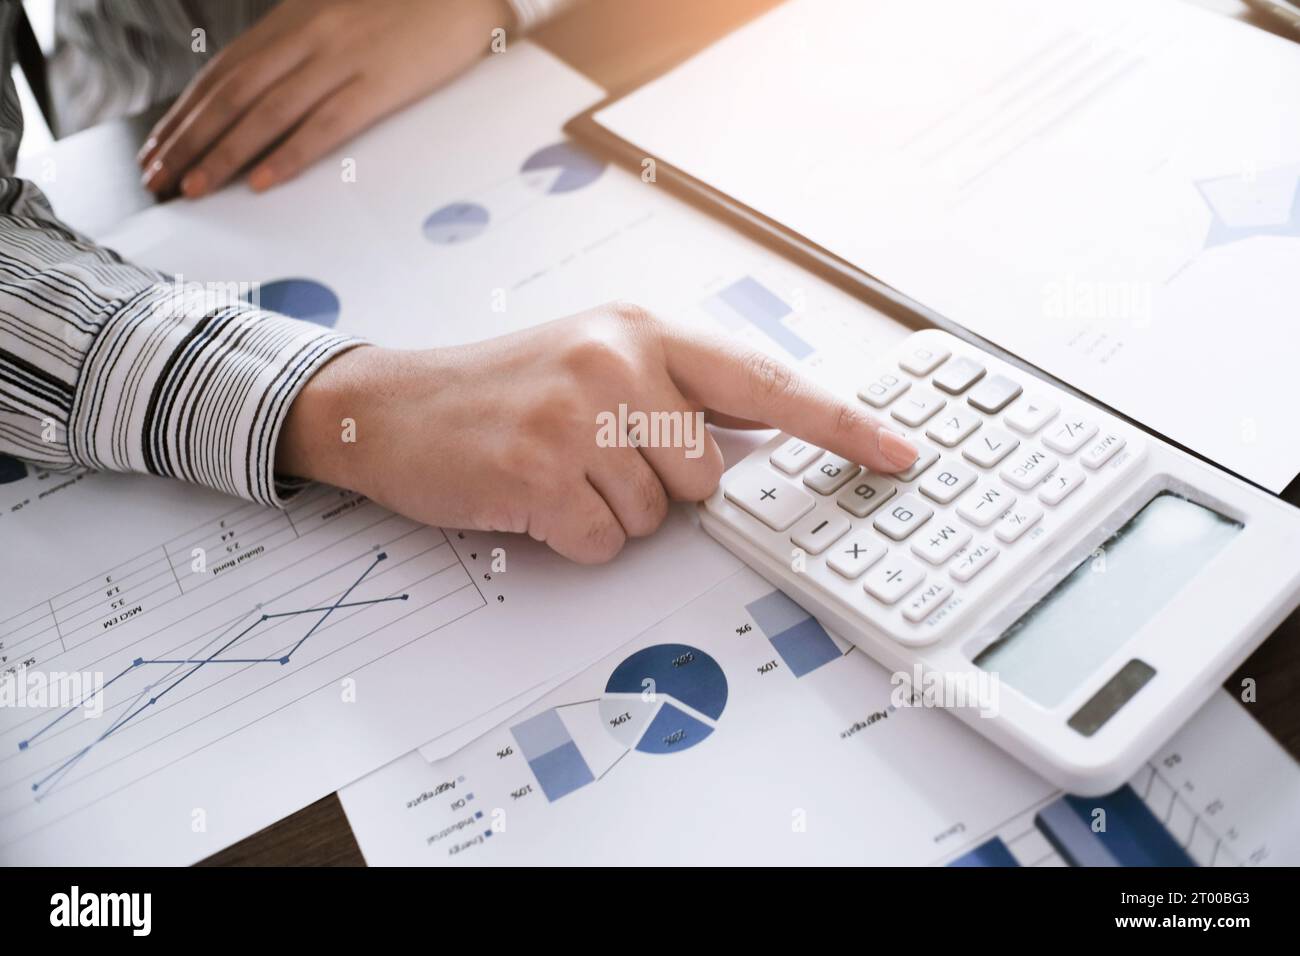 Les femmes de comptabilité d'entreprise travaillent avec la calculatrice et l'ordinateur portable. Concept de technologie financière Banque D'Images